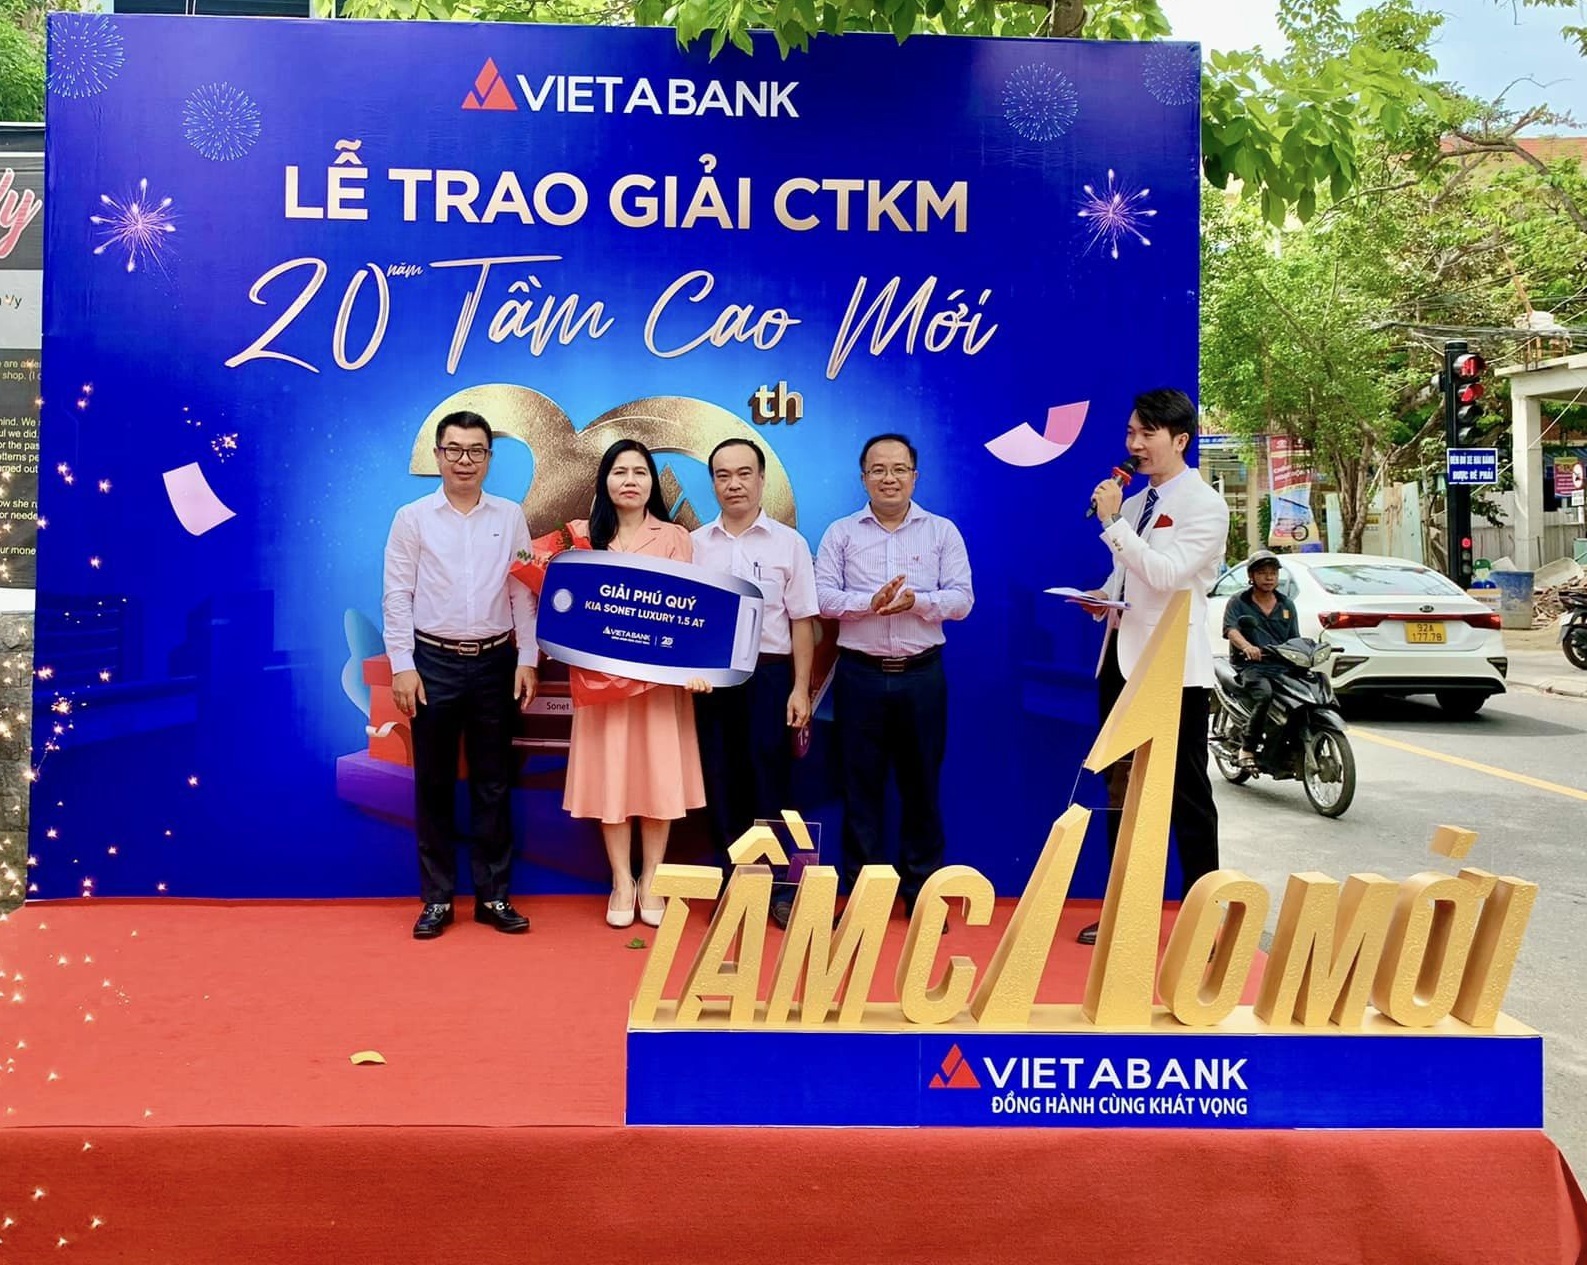 VietABank trao ô tô Kia Sonet cho khách hàng trúng thưởng CTKM 20 năm - Tầm cao mới